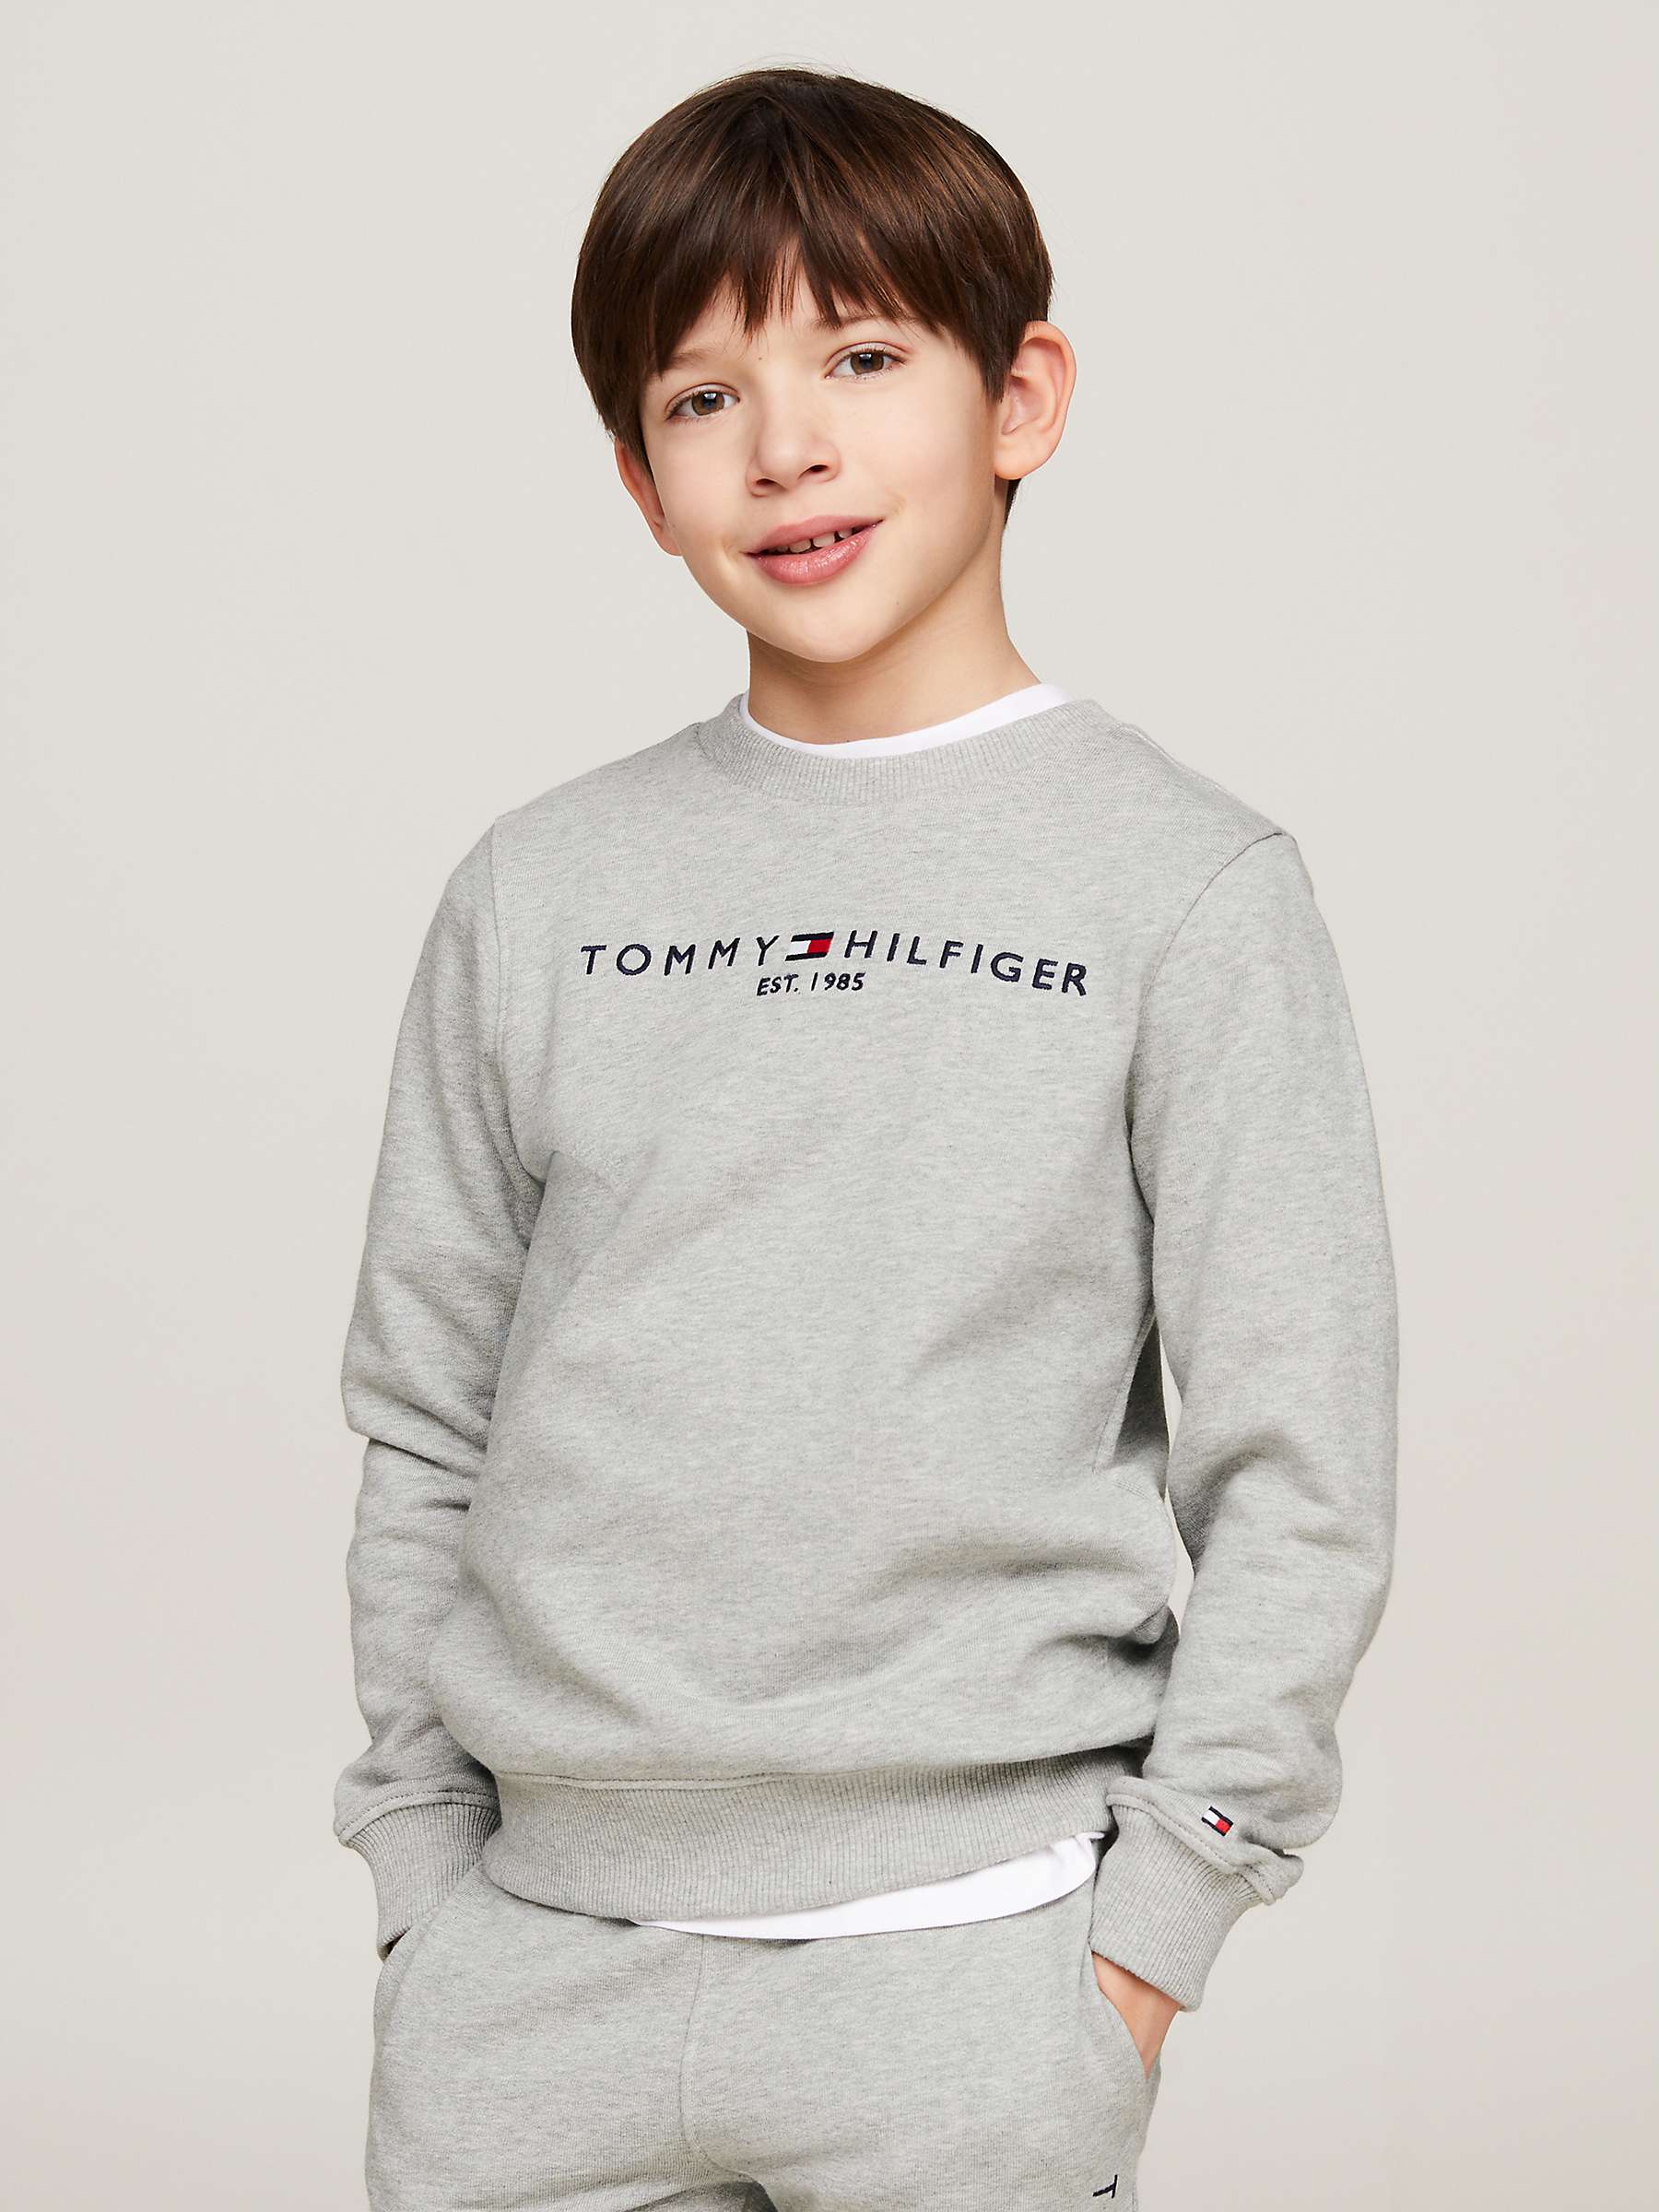 Tommy Hilfiger Kids' Essential Organic Cotton Logo Sweatshirt